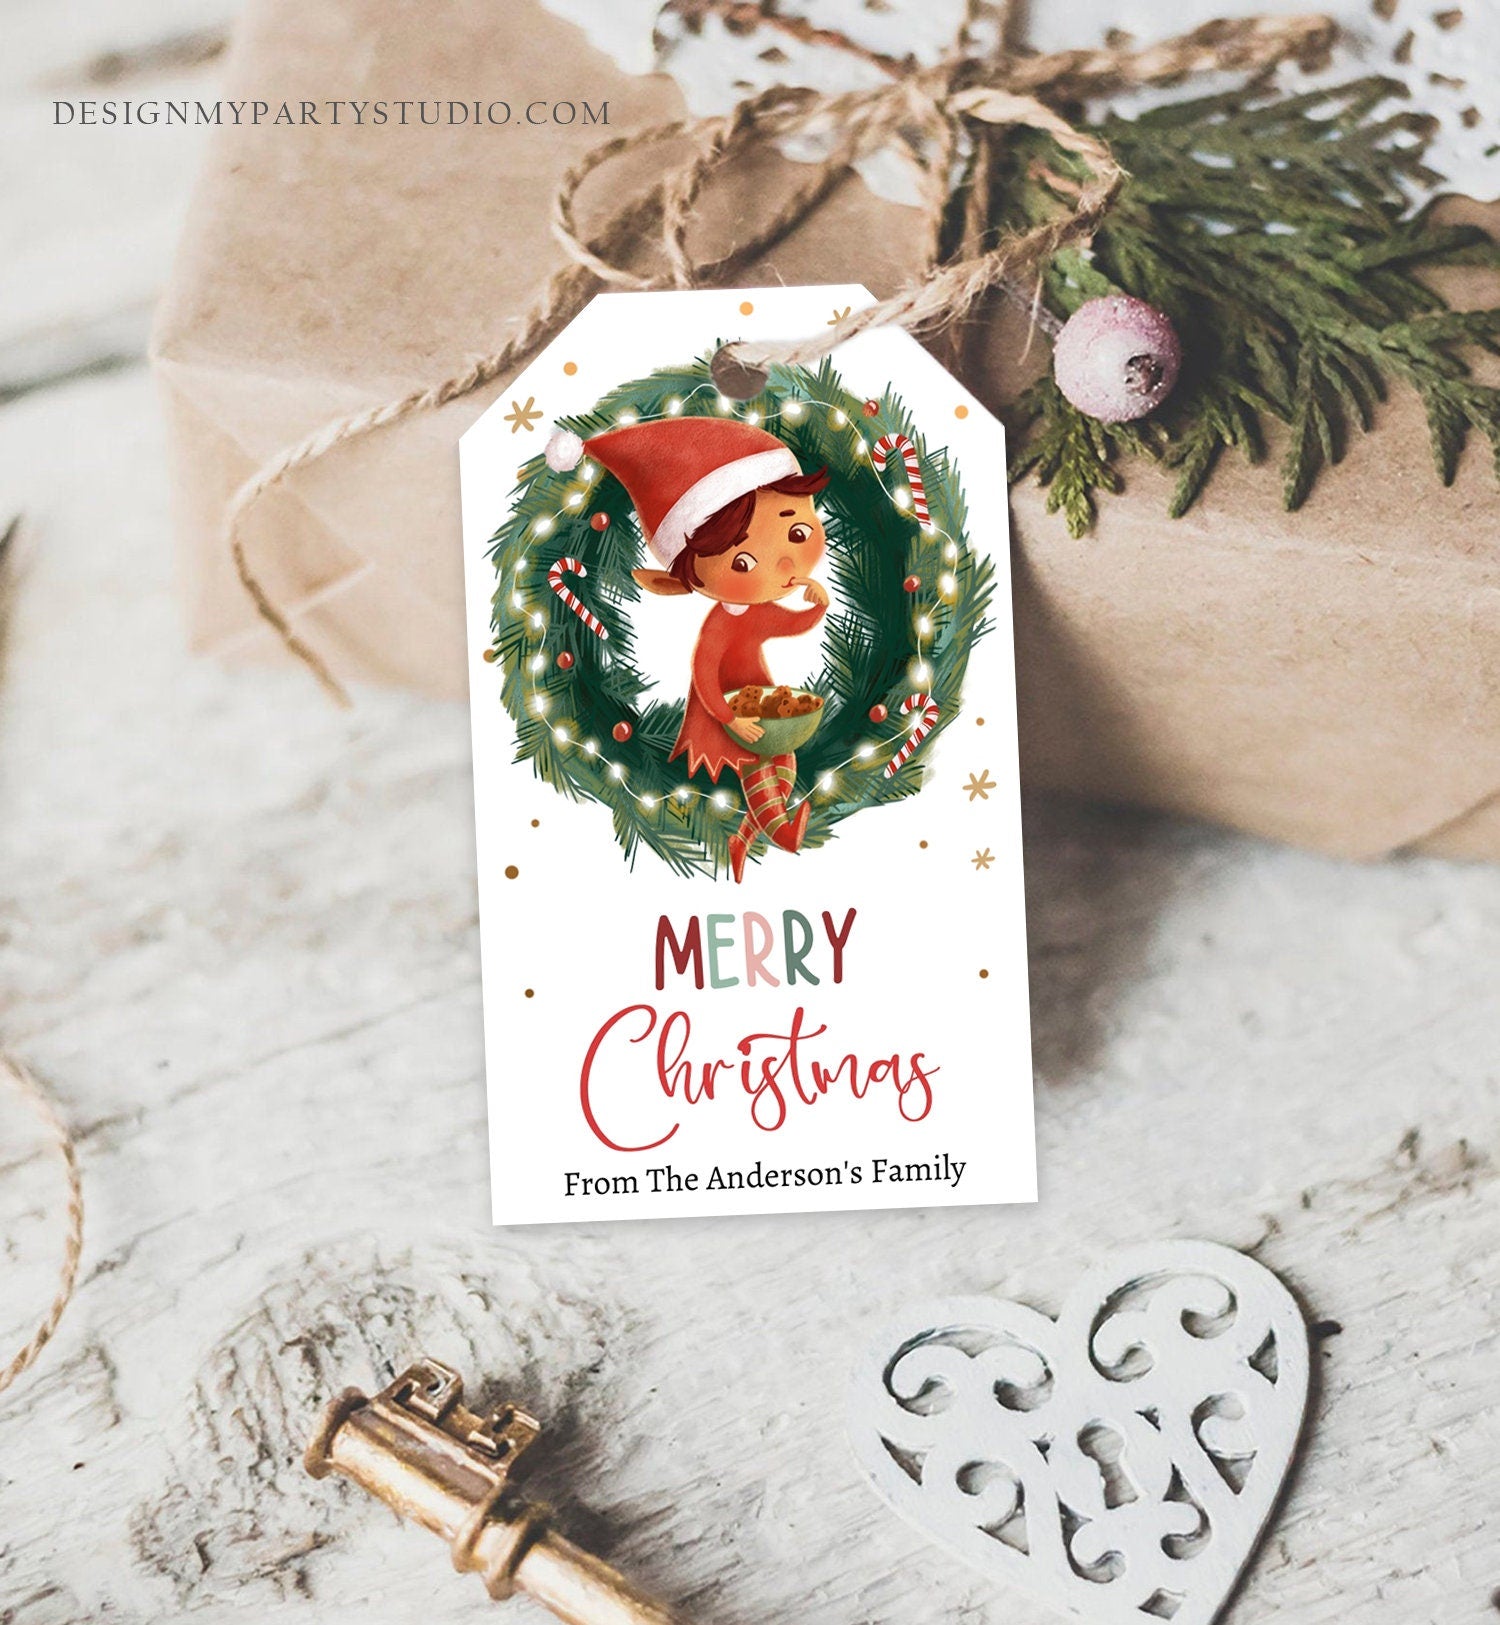 Editable Christmas Gift Tags Holiday Favor Tags Merry Christmas Holiday Tags Holiday Tags Cookie Tag Elf Download Printable Corjl 0443 0481